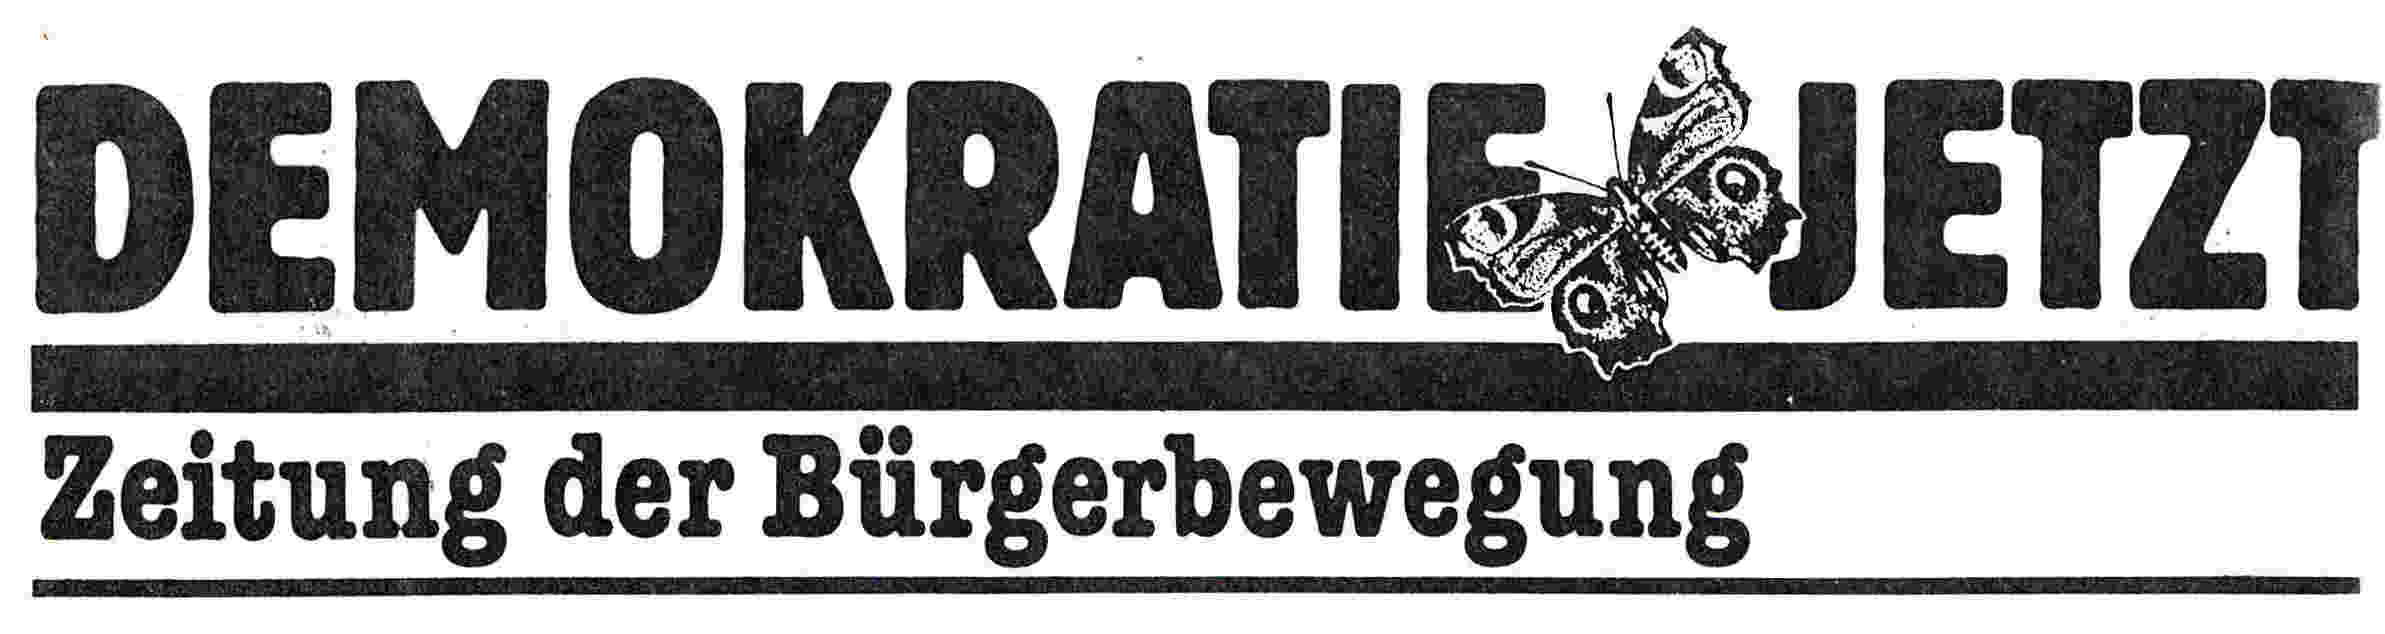 DEMOKRATIE JETZT Zeitung der Bügerbewegung AusgabeNrummer 4, November 1989